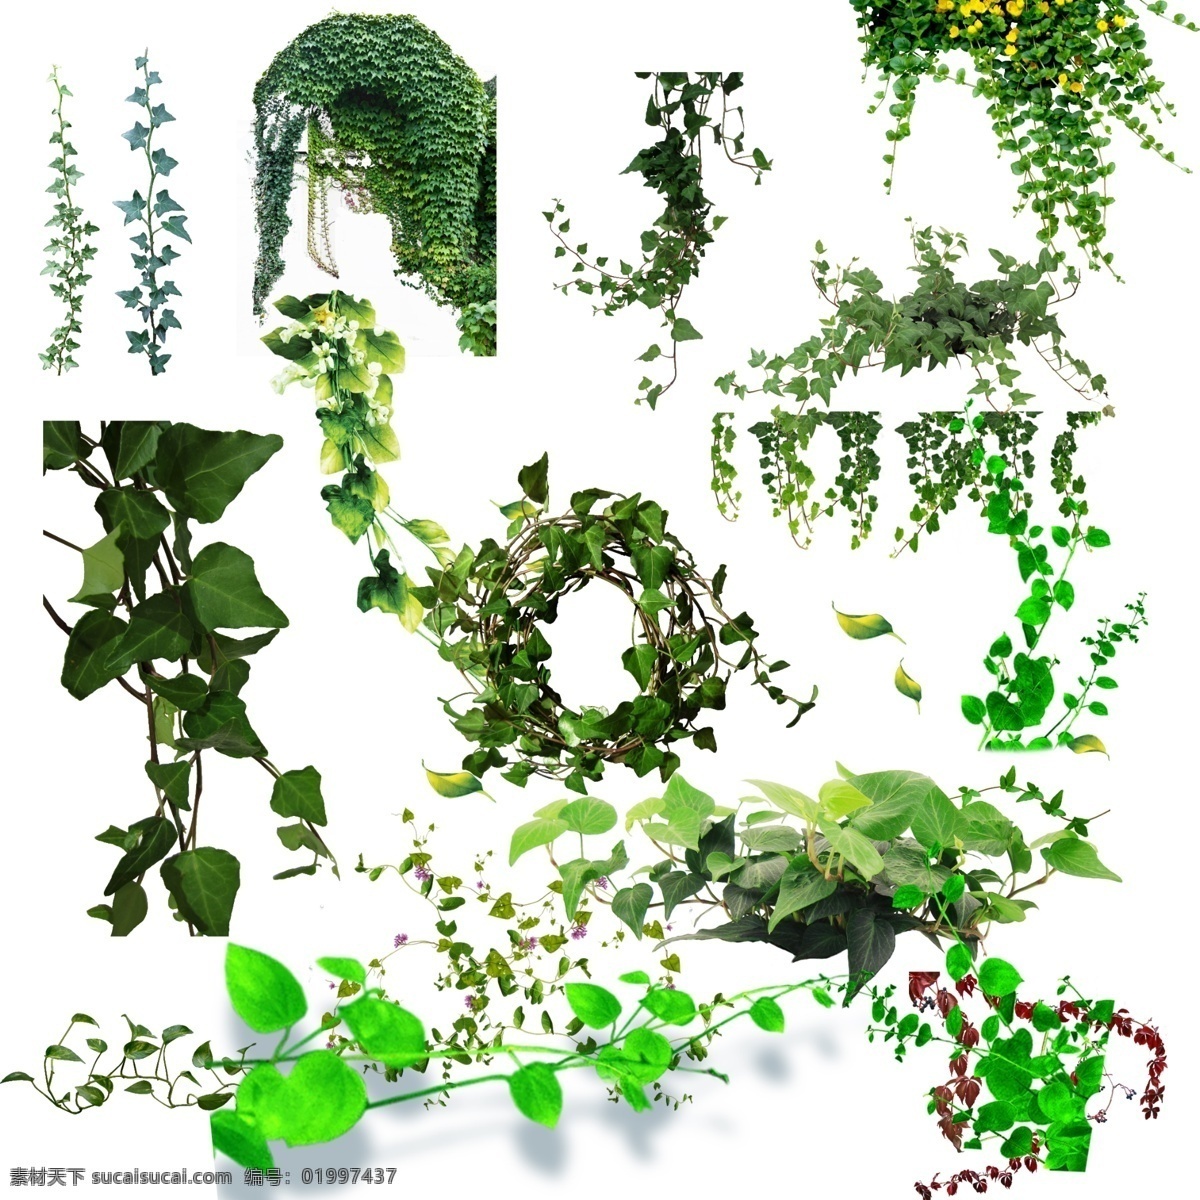 绿色蔓藤 分层 蔓藤素材 藤蔓 植物 绿色植物 高清蔓藤 绿色藤蔓 蔓藤分层素材 设计元素